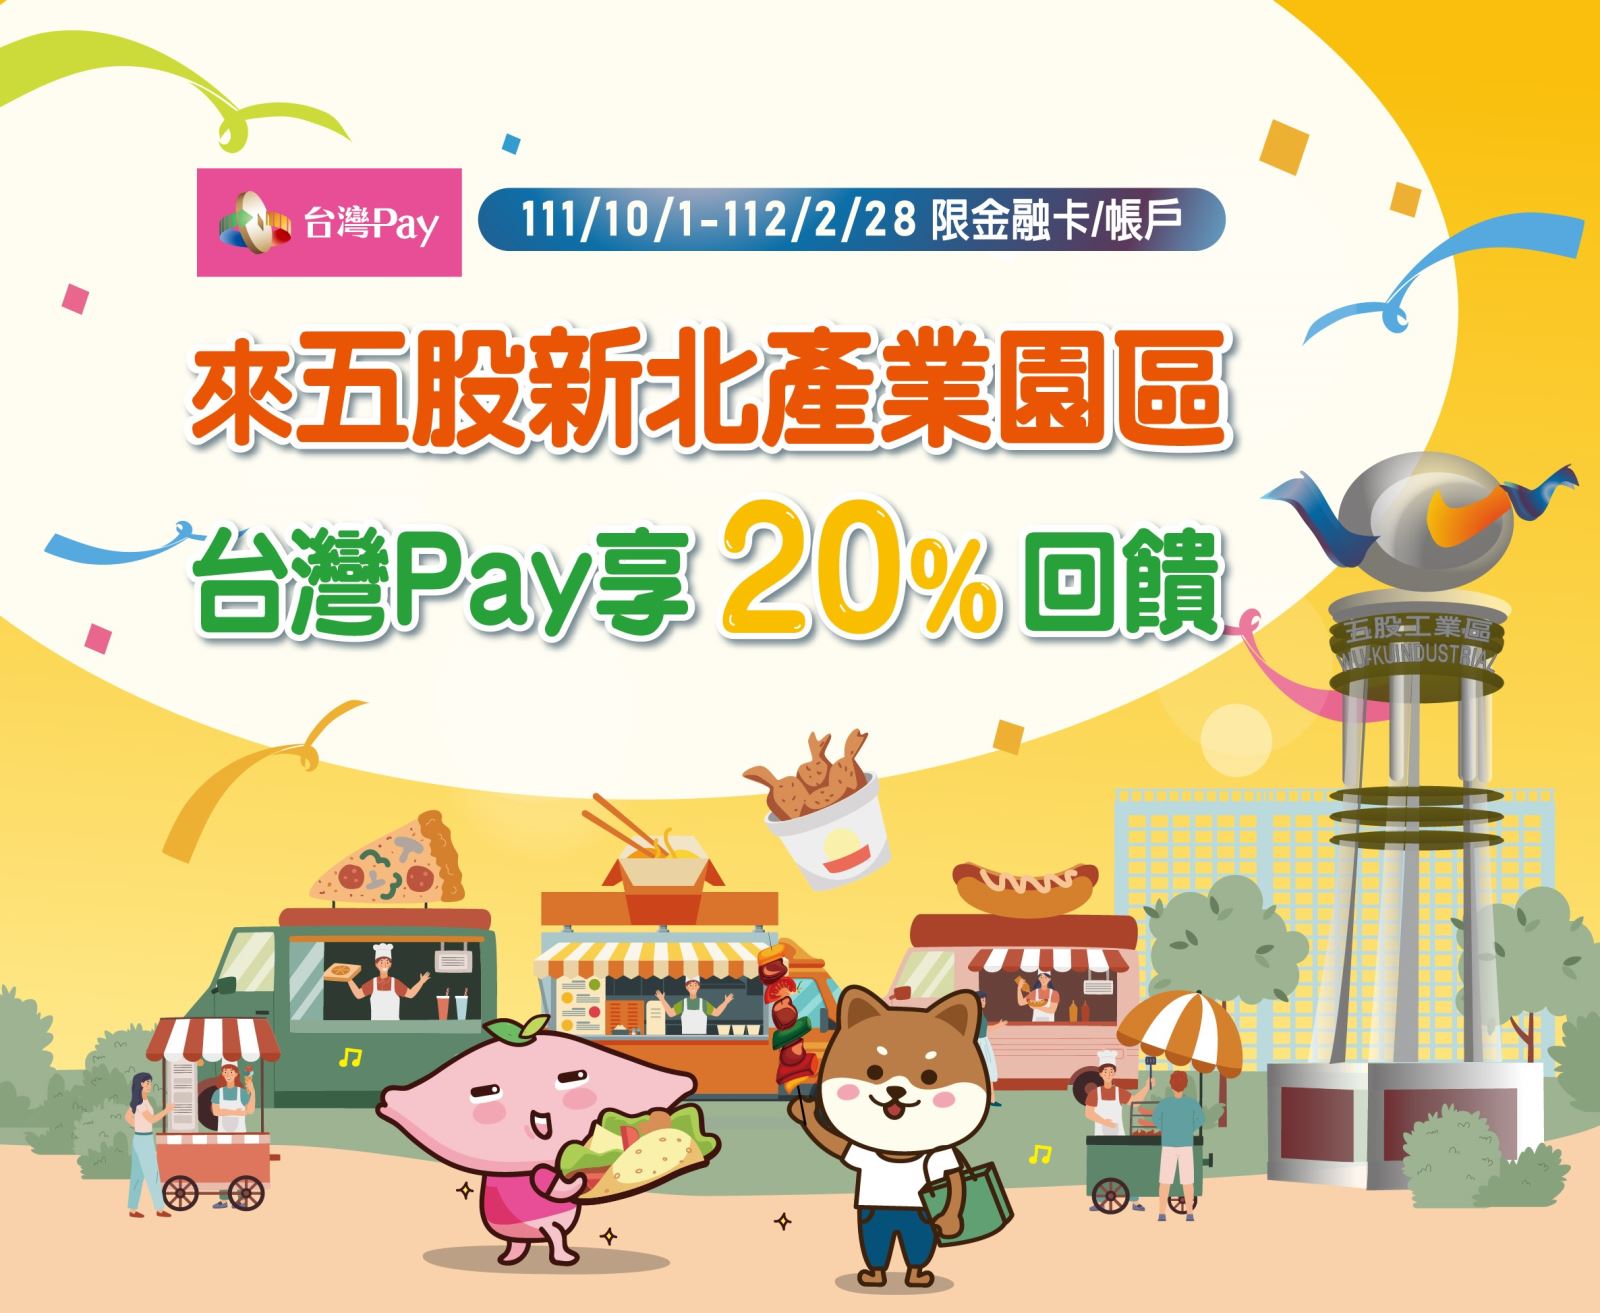 來五股新北產業園區 台灣 Pay 享20%回饋。單筆消費不限金額可享20%之現金回饋